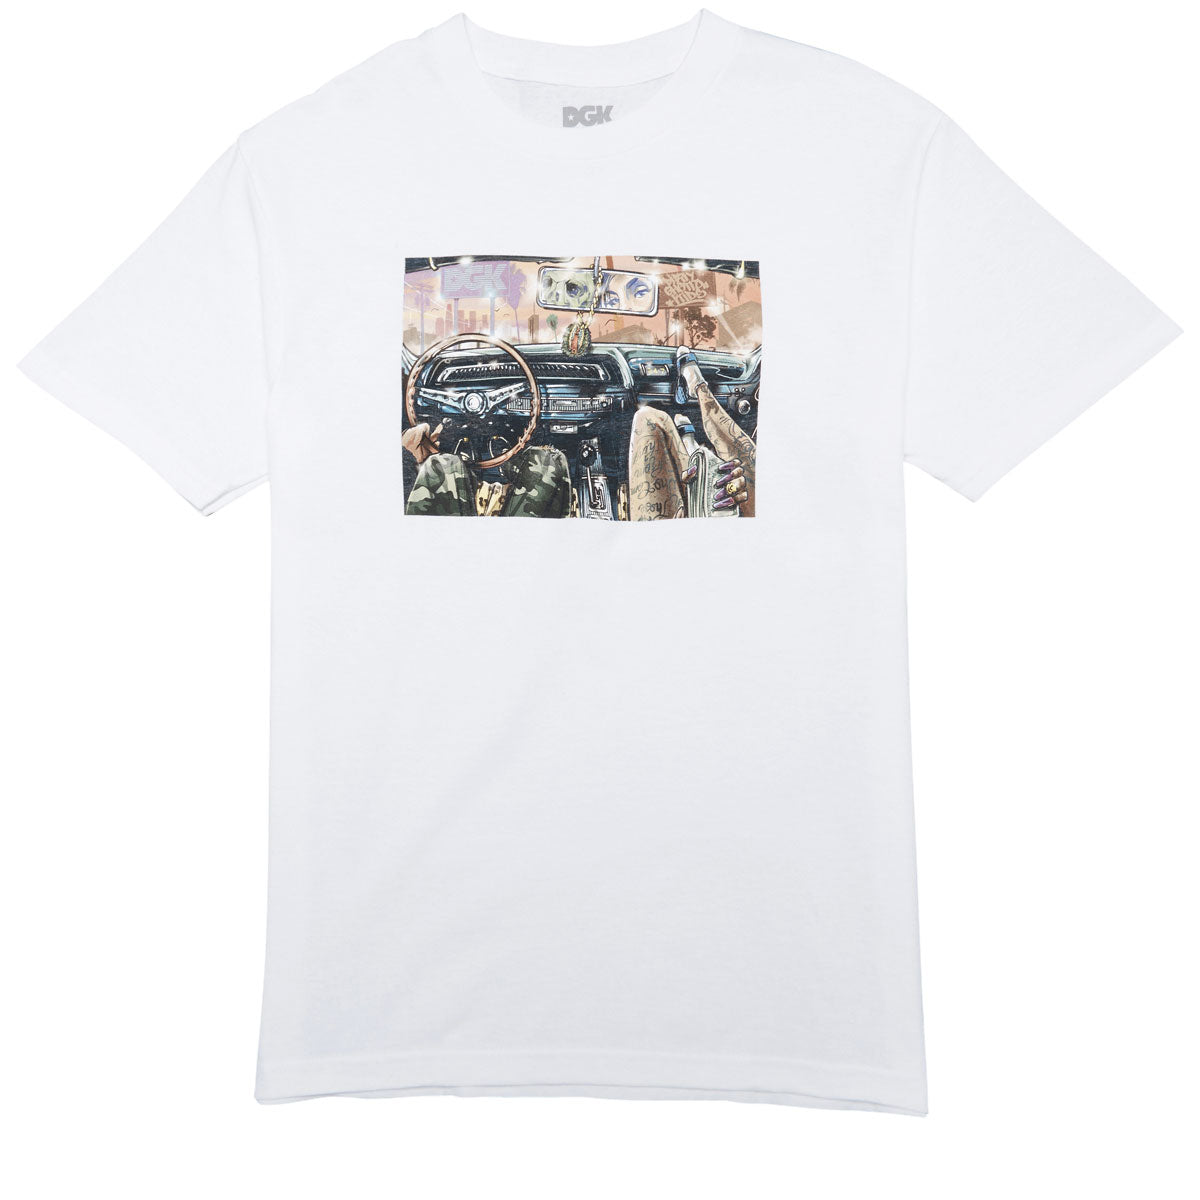 DGK Boulevard Kings T-Shirt - White image 1